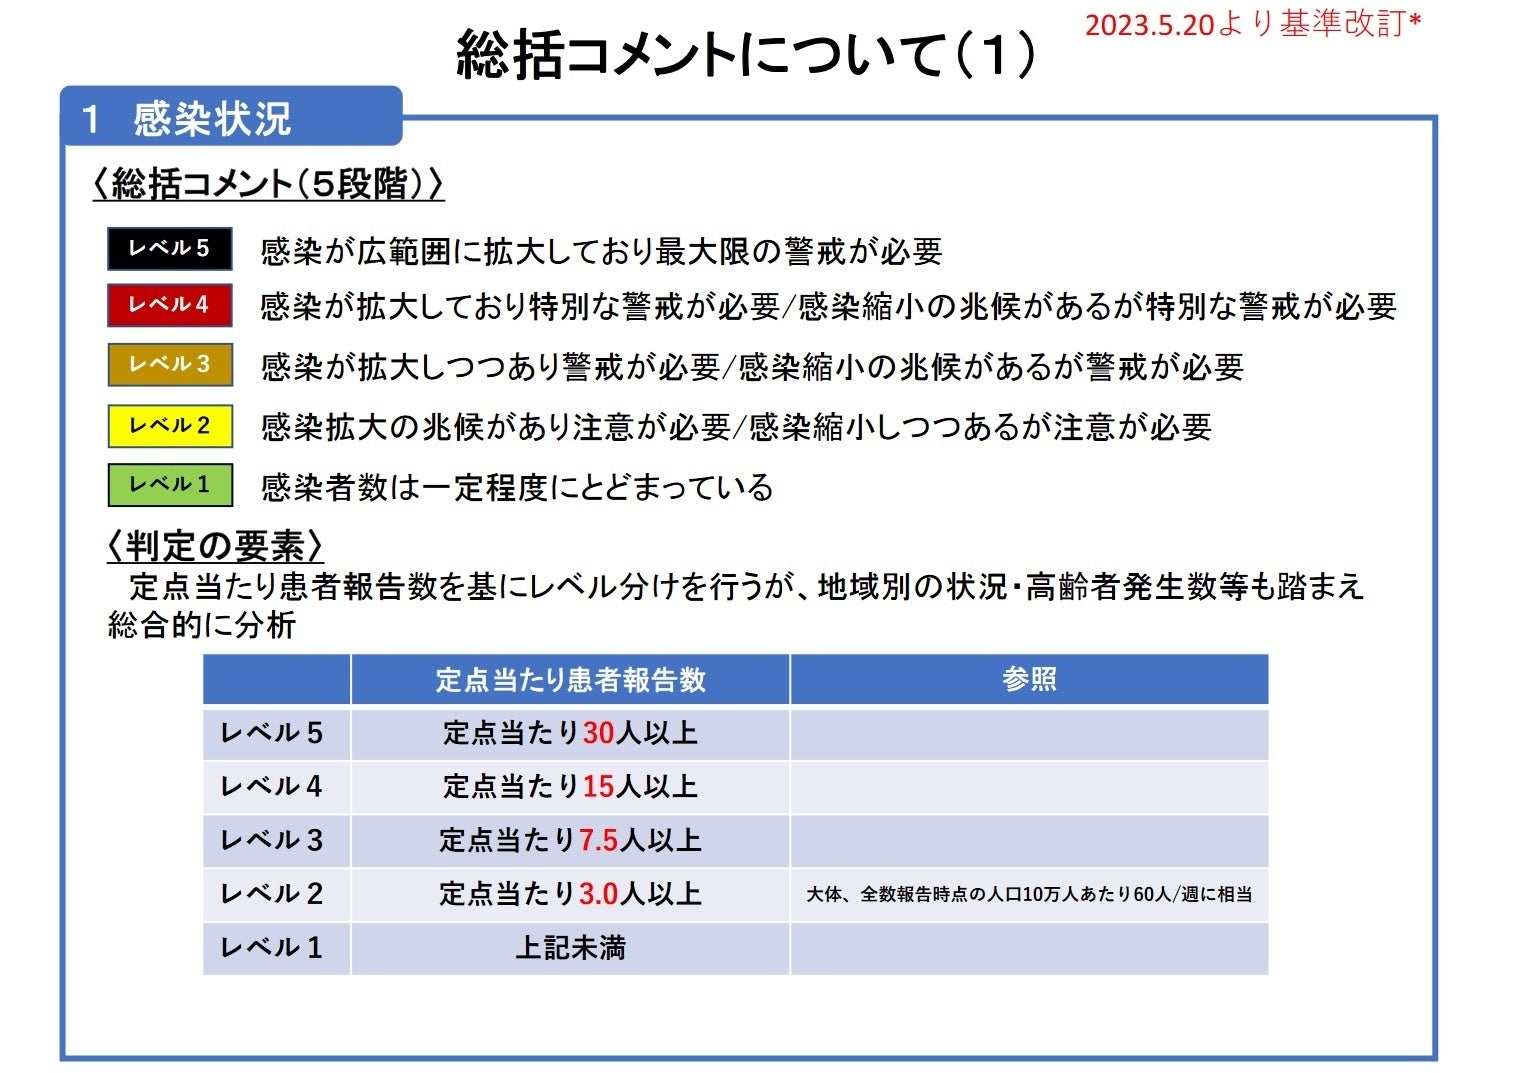 【岡山大学】岡山県内の感染状況・医療提供体制の分析について（2023年7月7日現在）